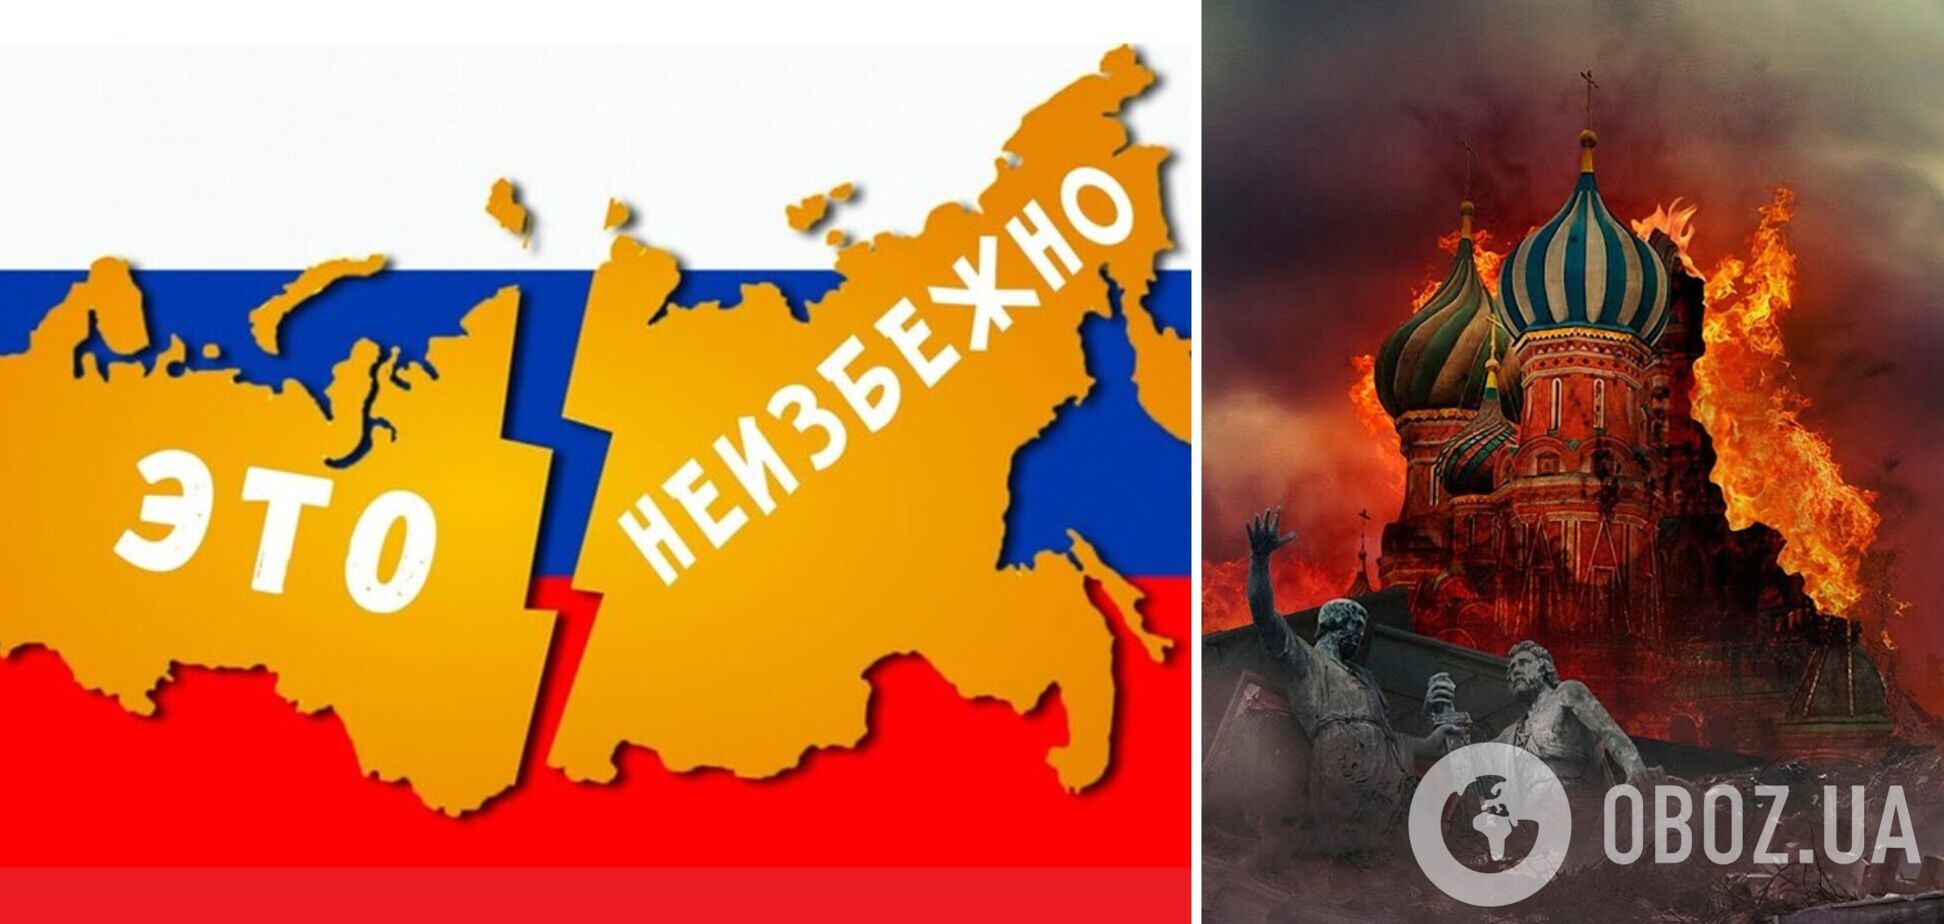 Ростовська область готова першою приєднатися до України: що чекає на рф після поразки